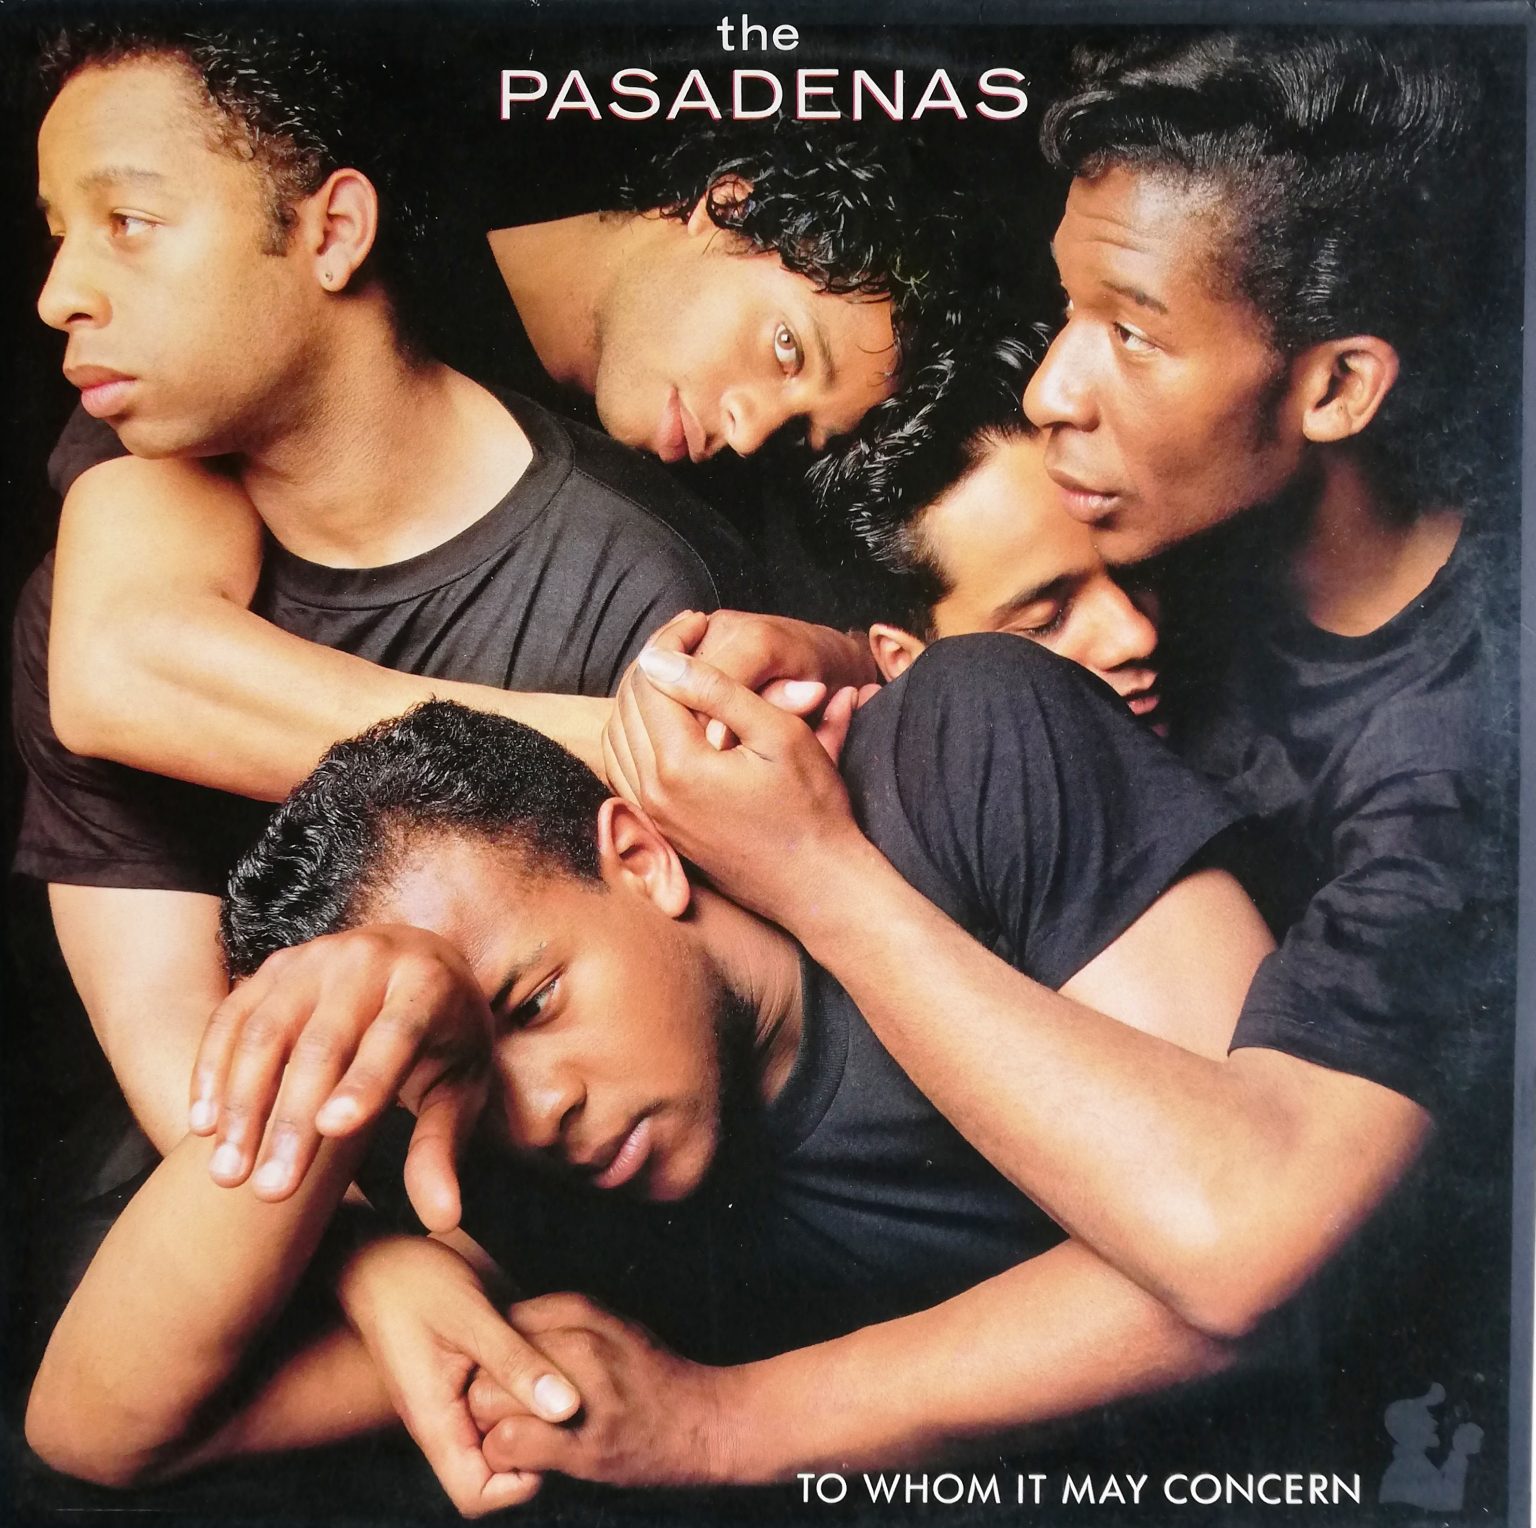 The Pasadenas – To Whom It May Concern